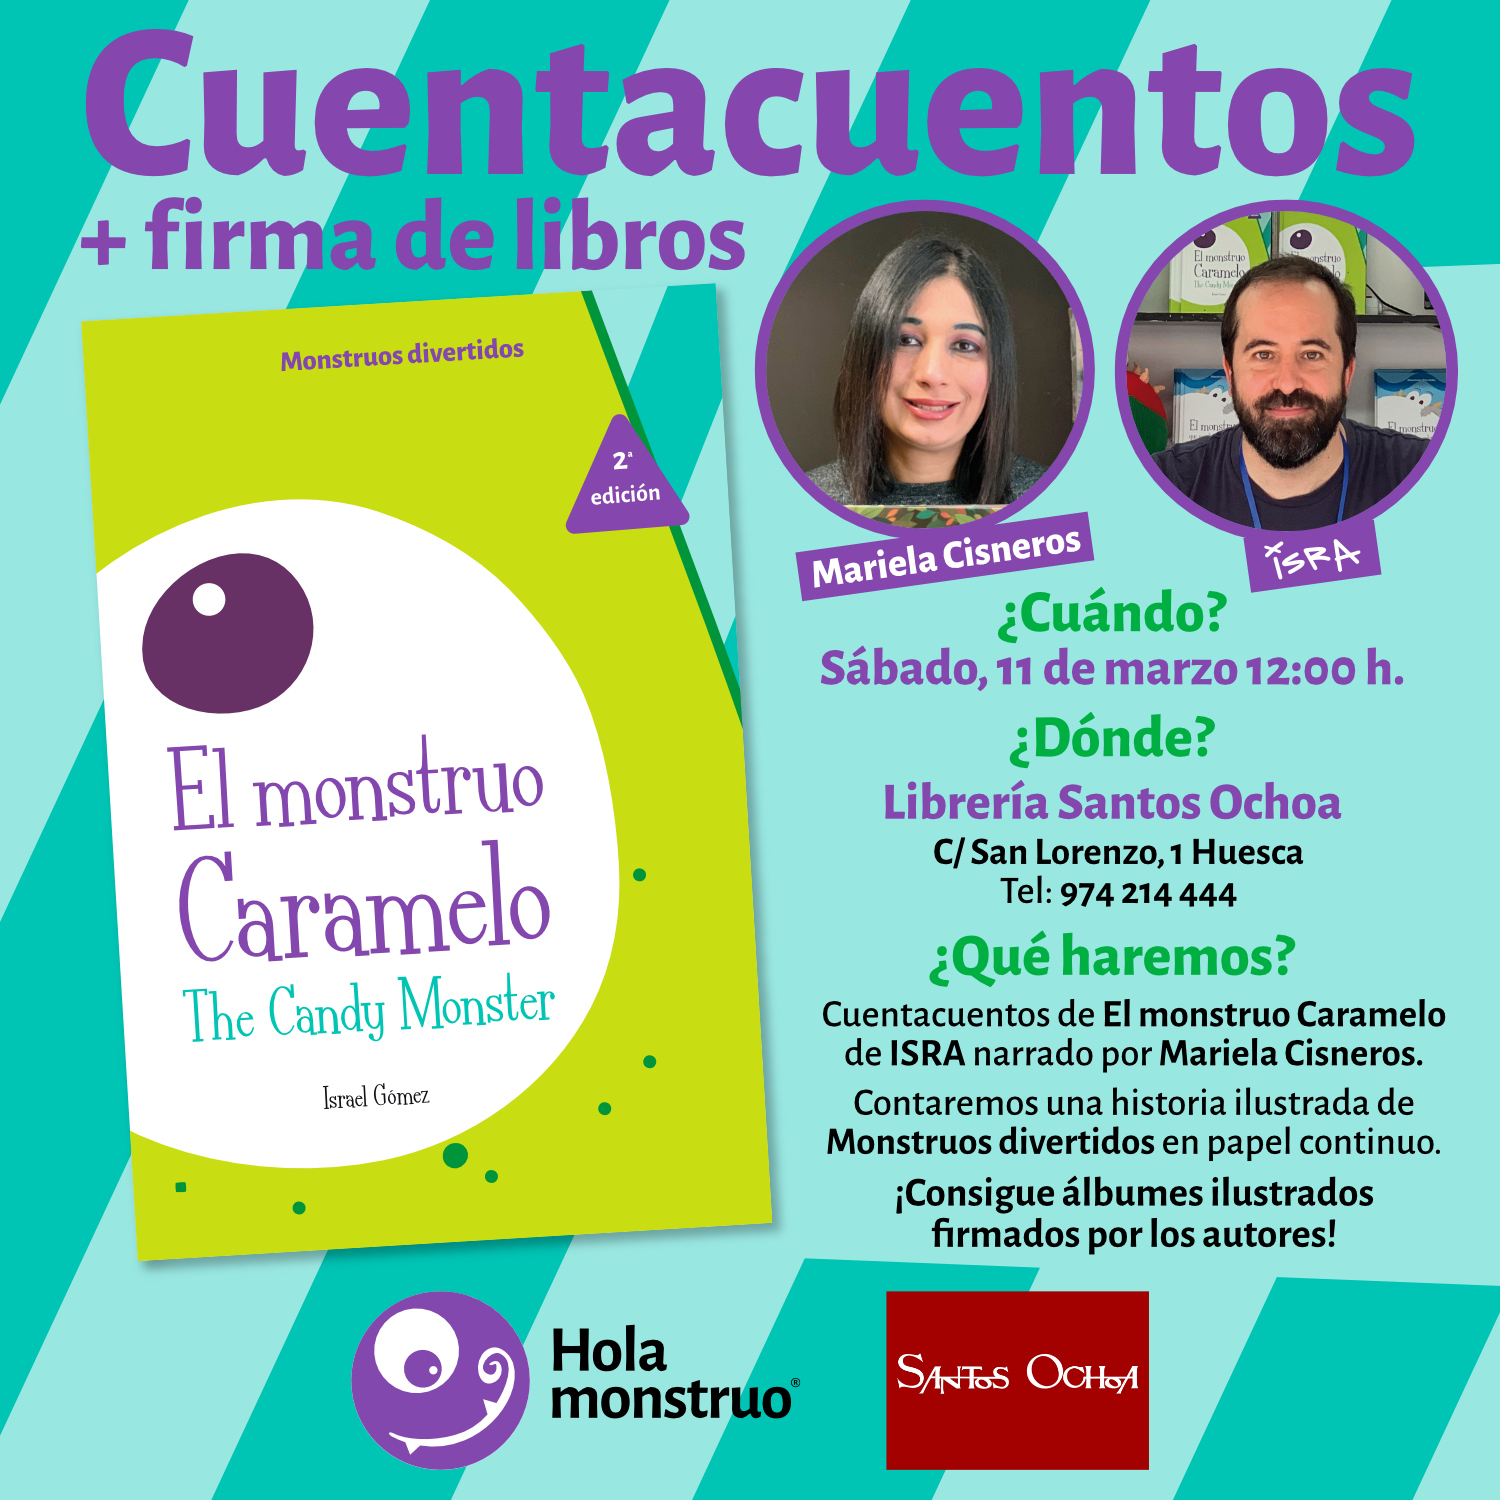 Cuentacuentos, historia ilustrada y firma de libros en Librería Santos Ochoa, Huesca